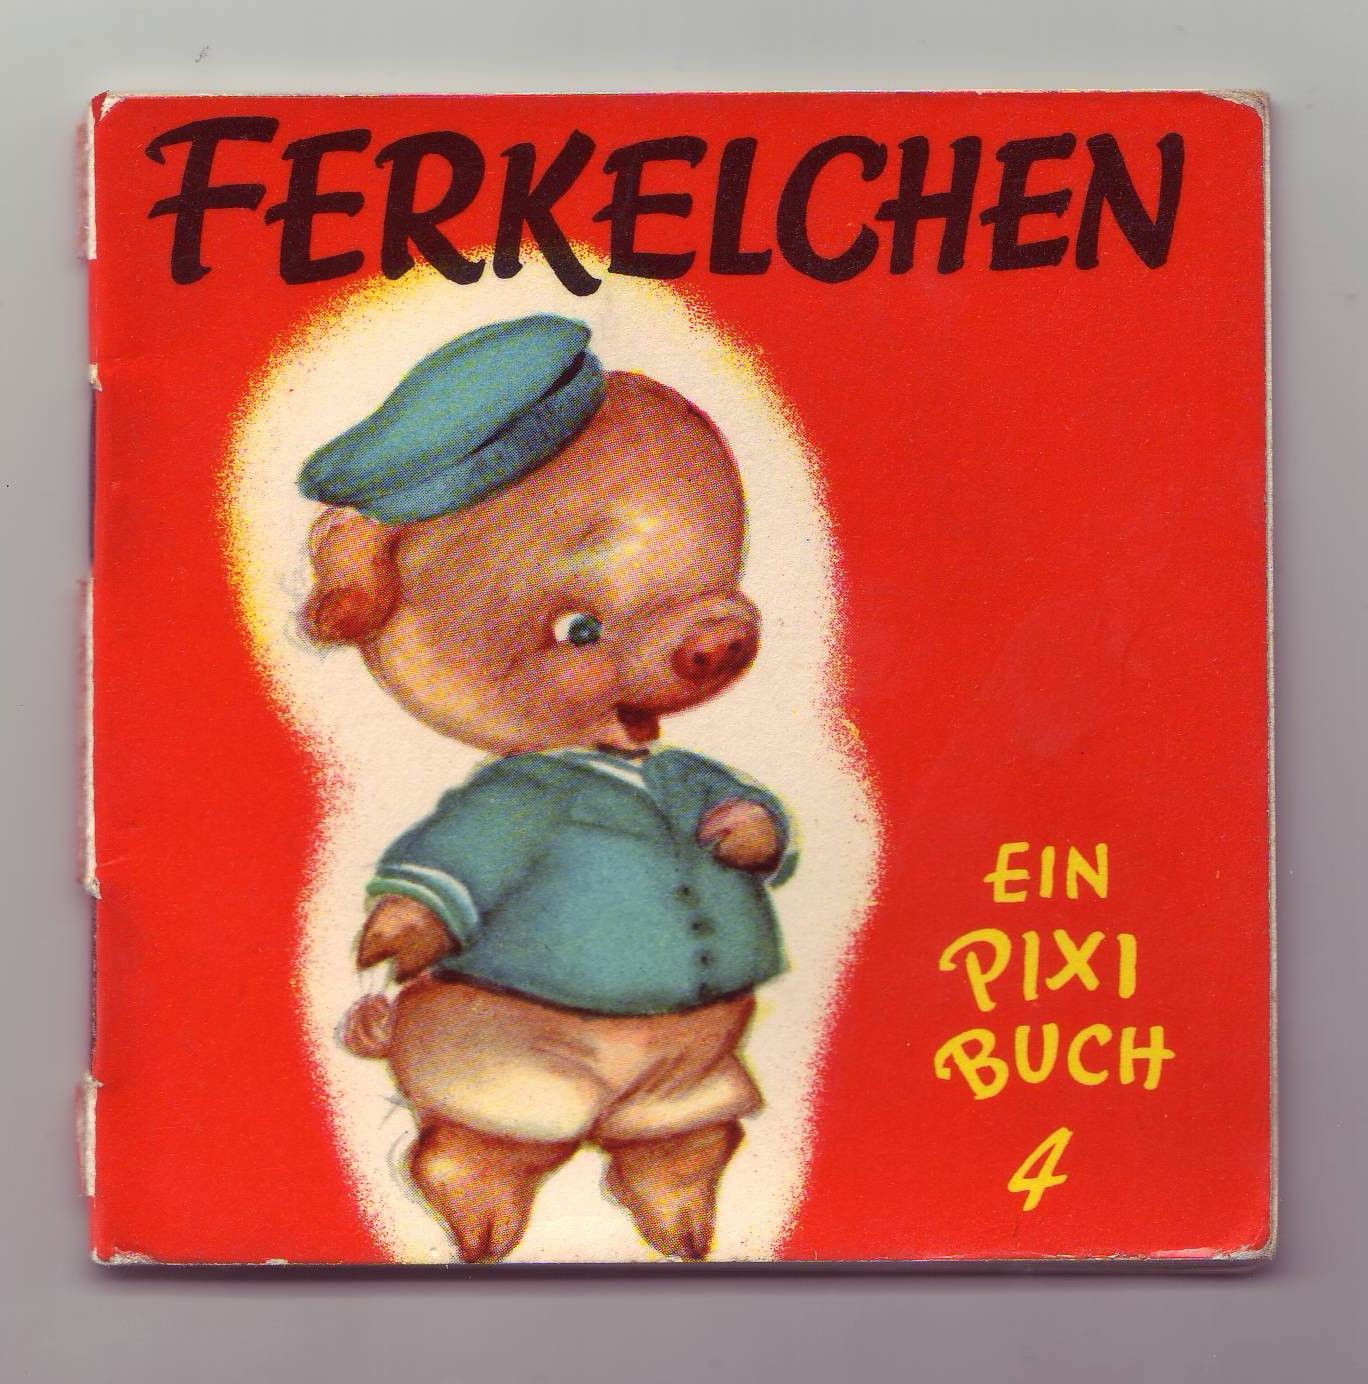 Pixi-Buch "Ferkelchen" (Stadtmuseum Lippstadt CC BY-NC-SA)